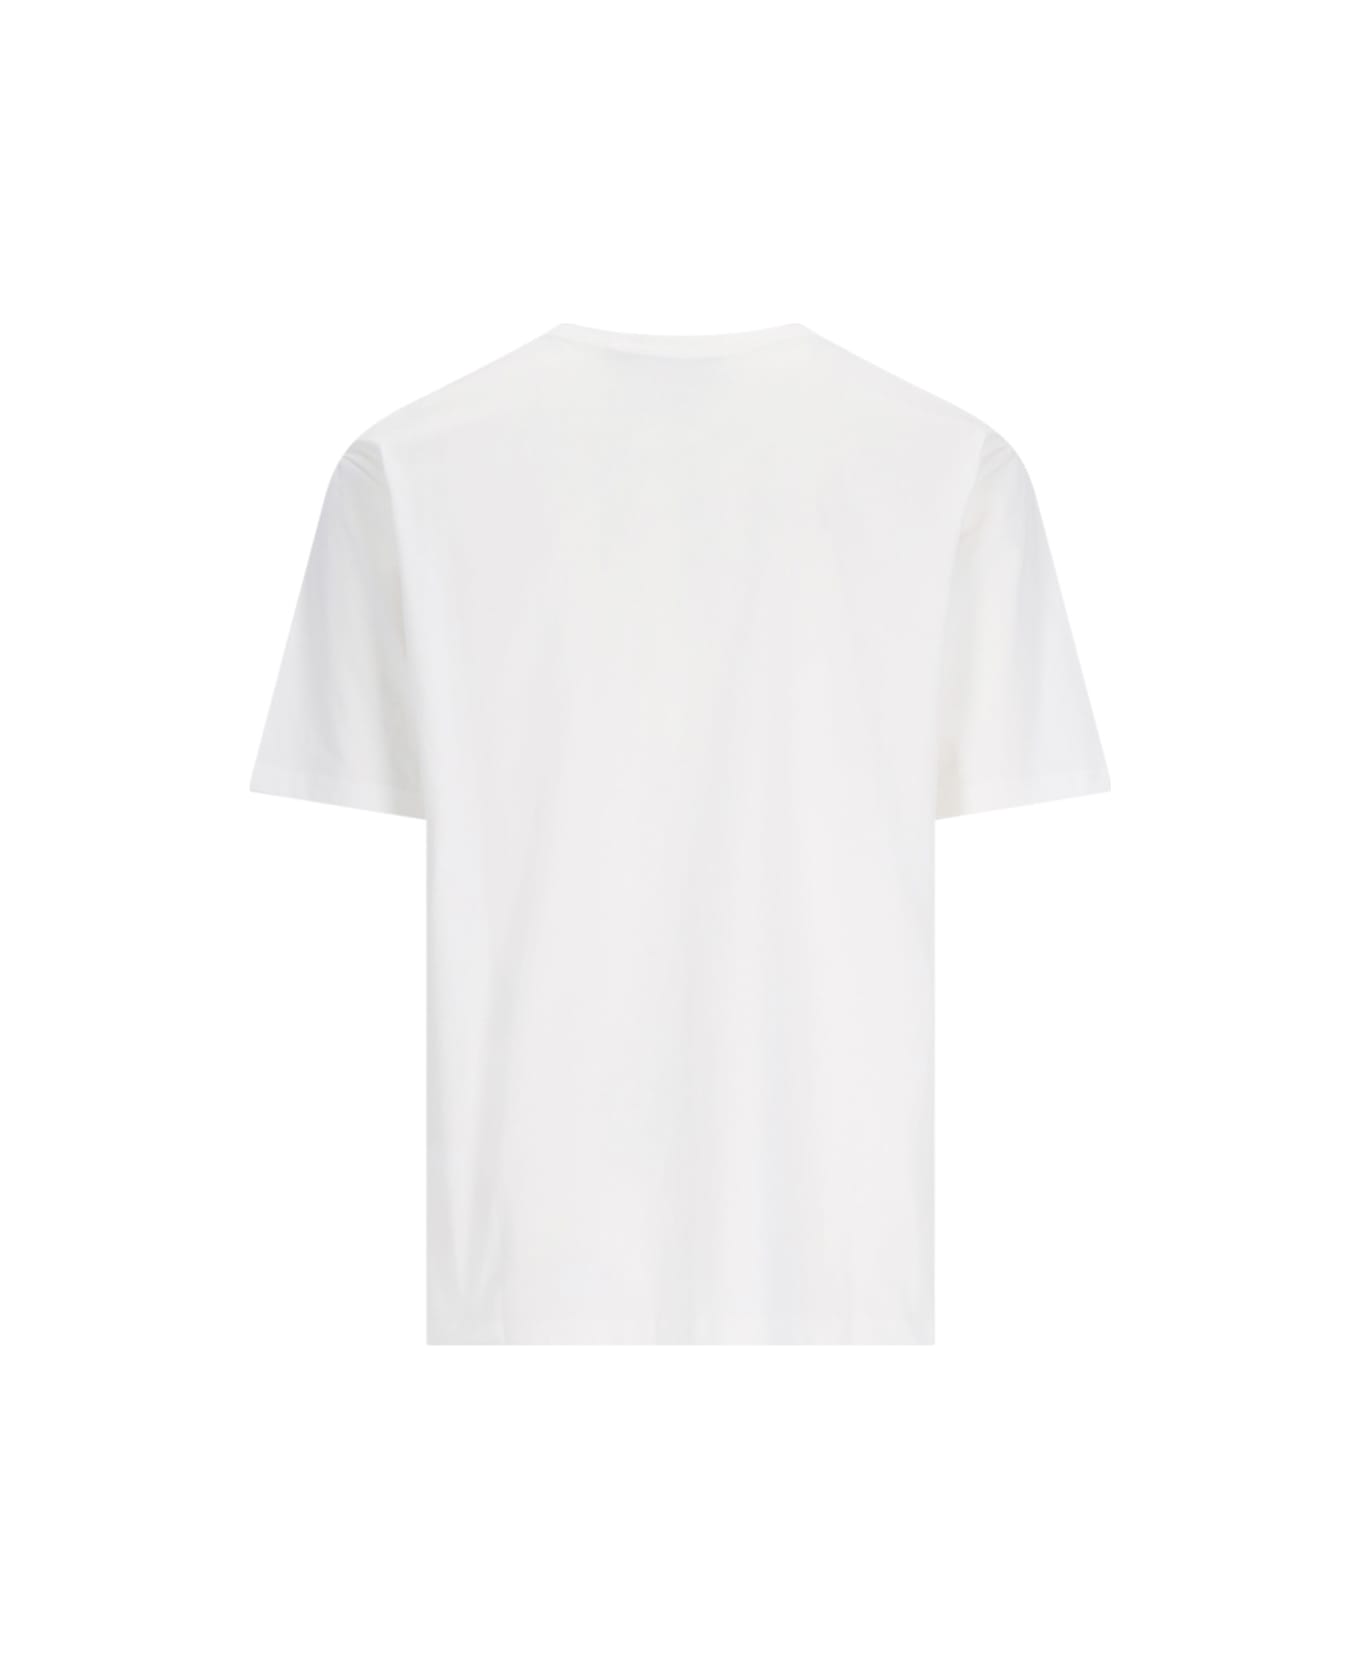 Gramicci Logo T-shirt - White シャツ